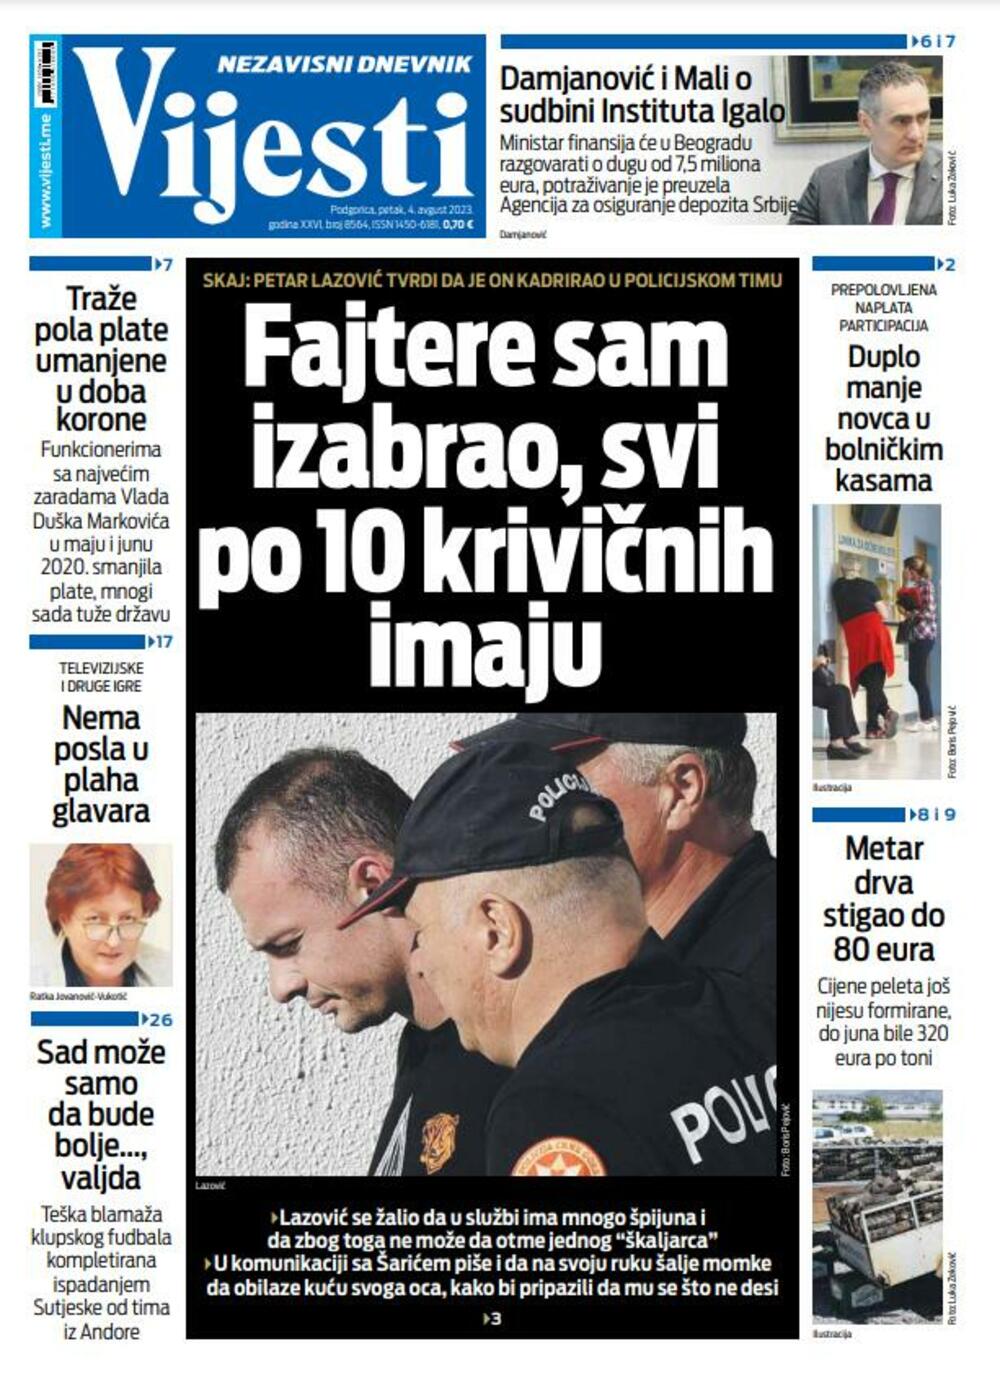 Naslovna strana "Vijesti" za 4. avgust 2023. godine, Foto: Vijesti